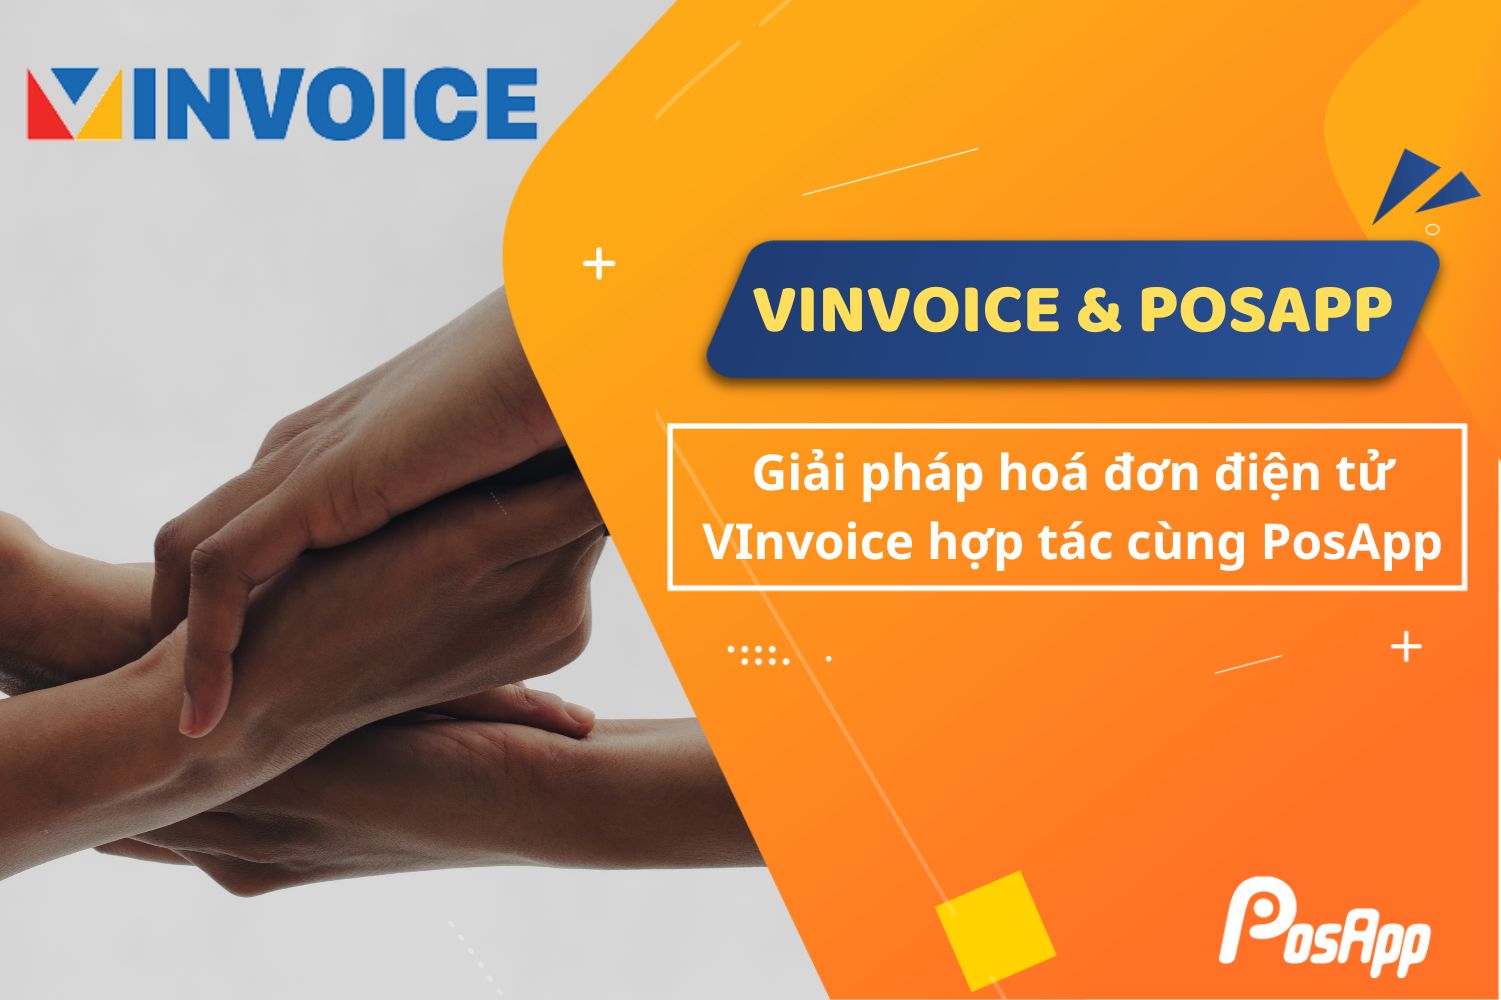 Hóa đơn điện tử VInvoice